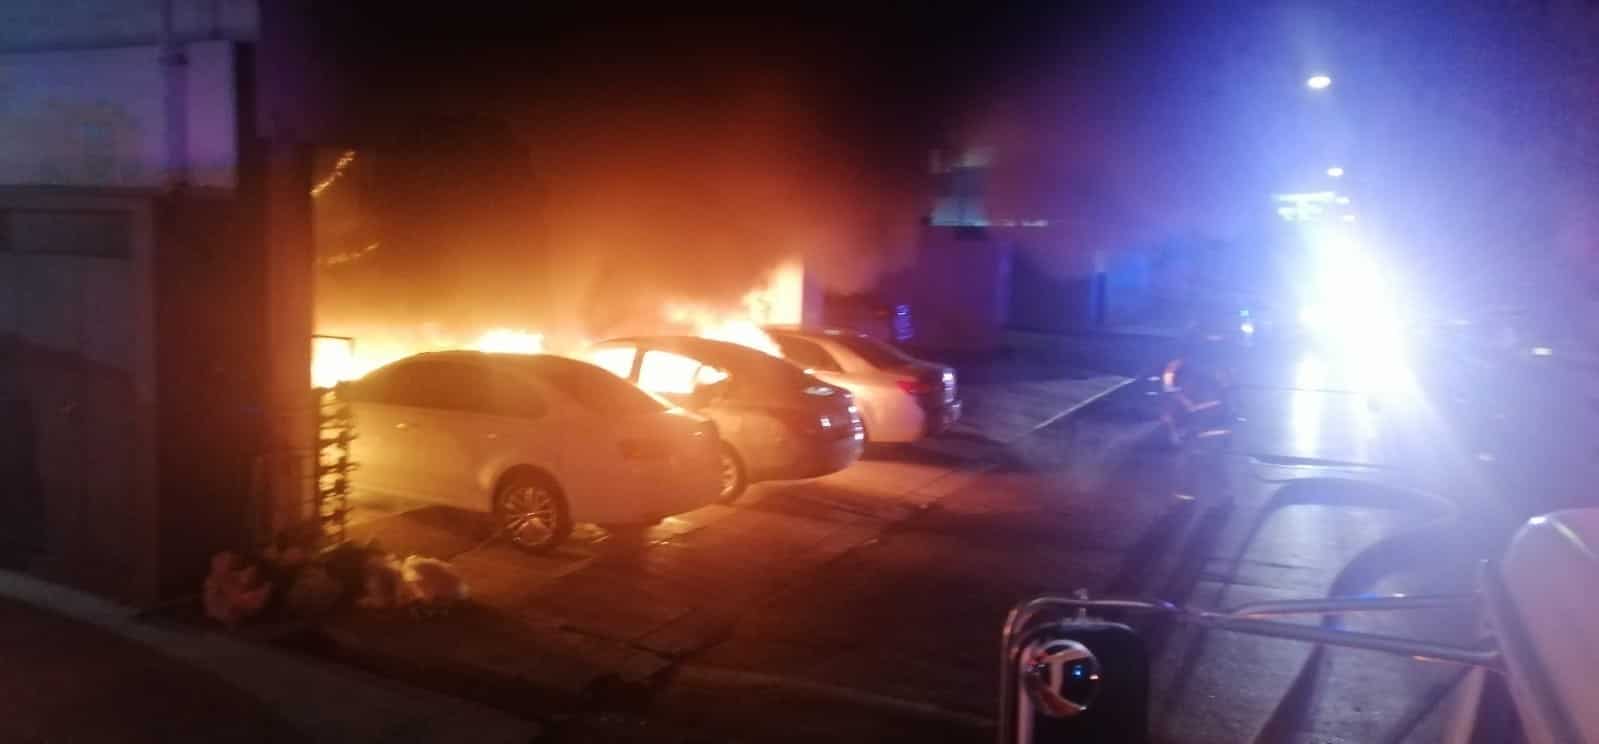 Una intensa movilización de los puestos de socorro se registró en la colonia Mitras Centro, al incendiarse cinco vehículos en el estacionamiento de un complejo de departamentos